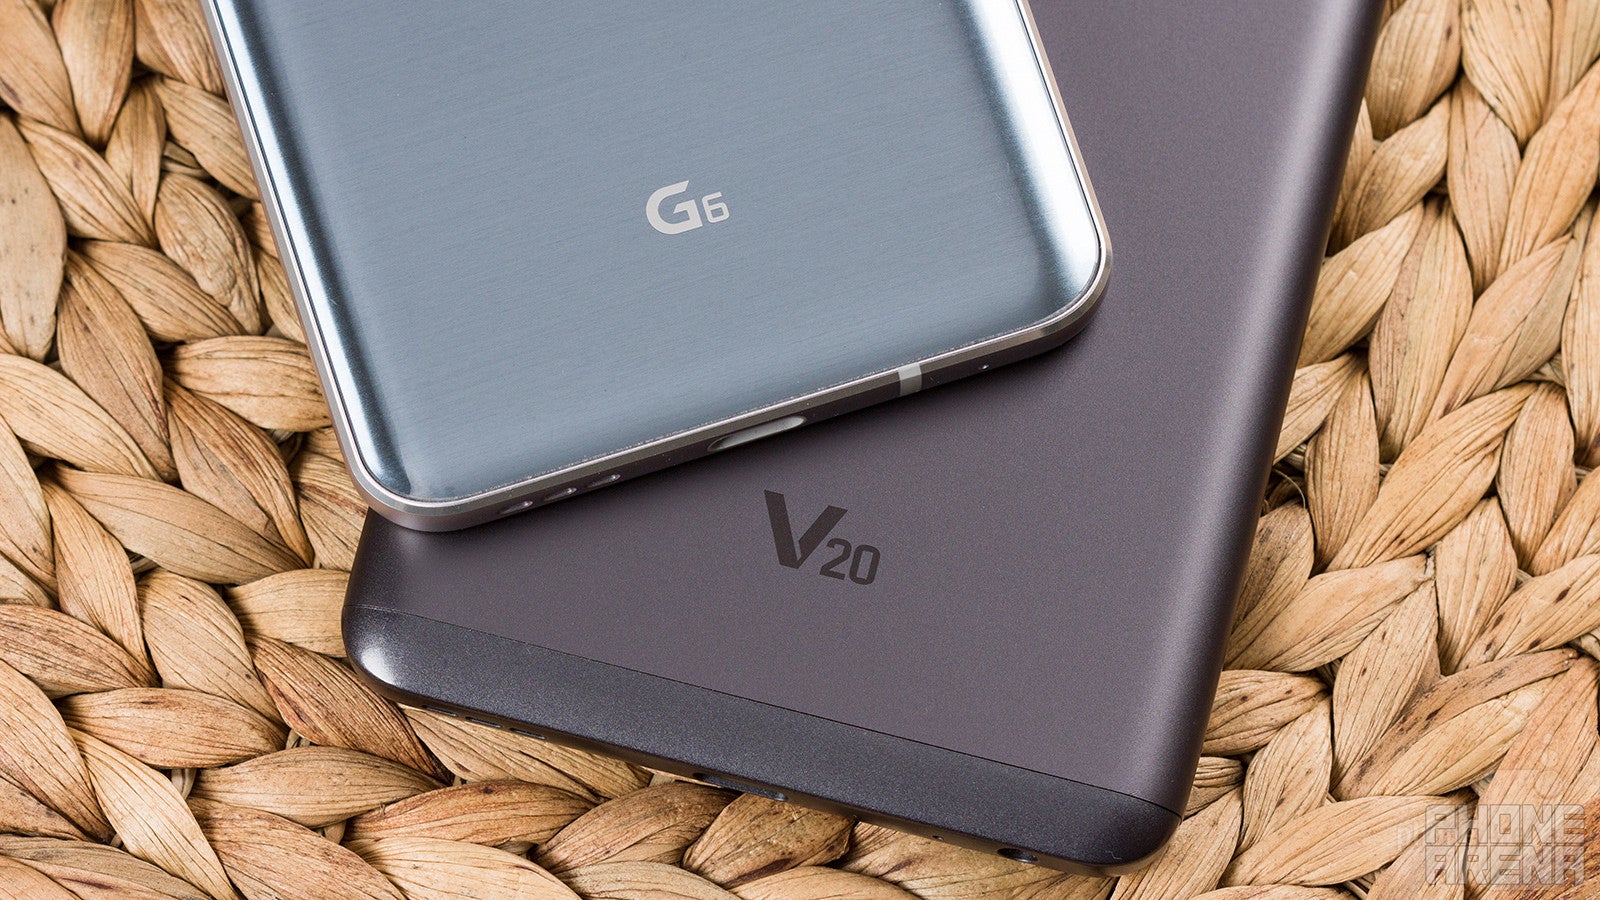 LG G6 vs LG V20